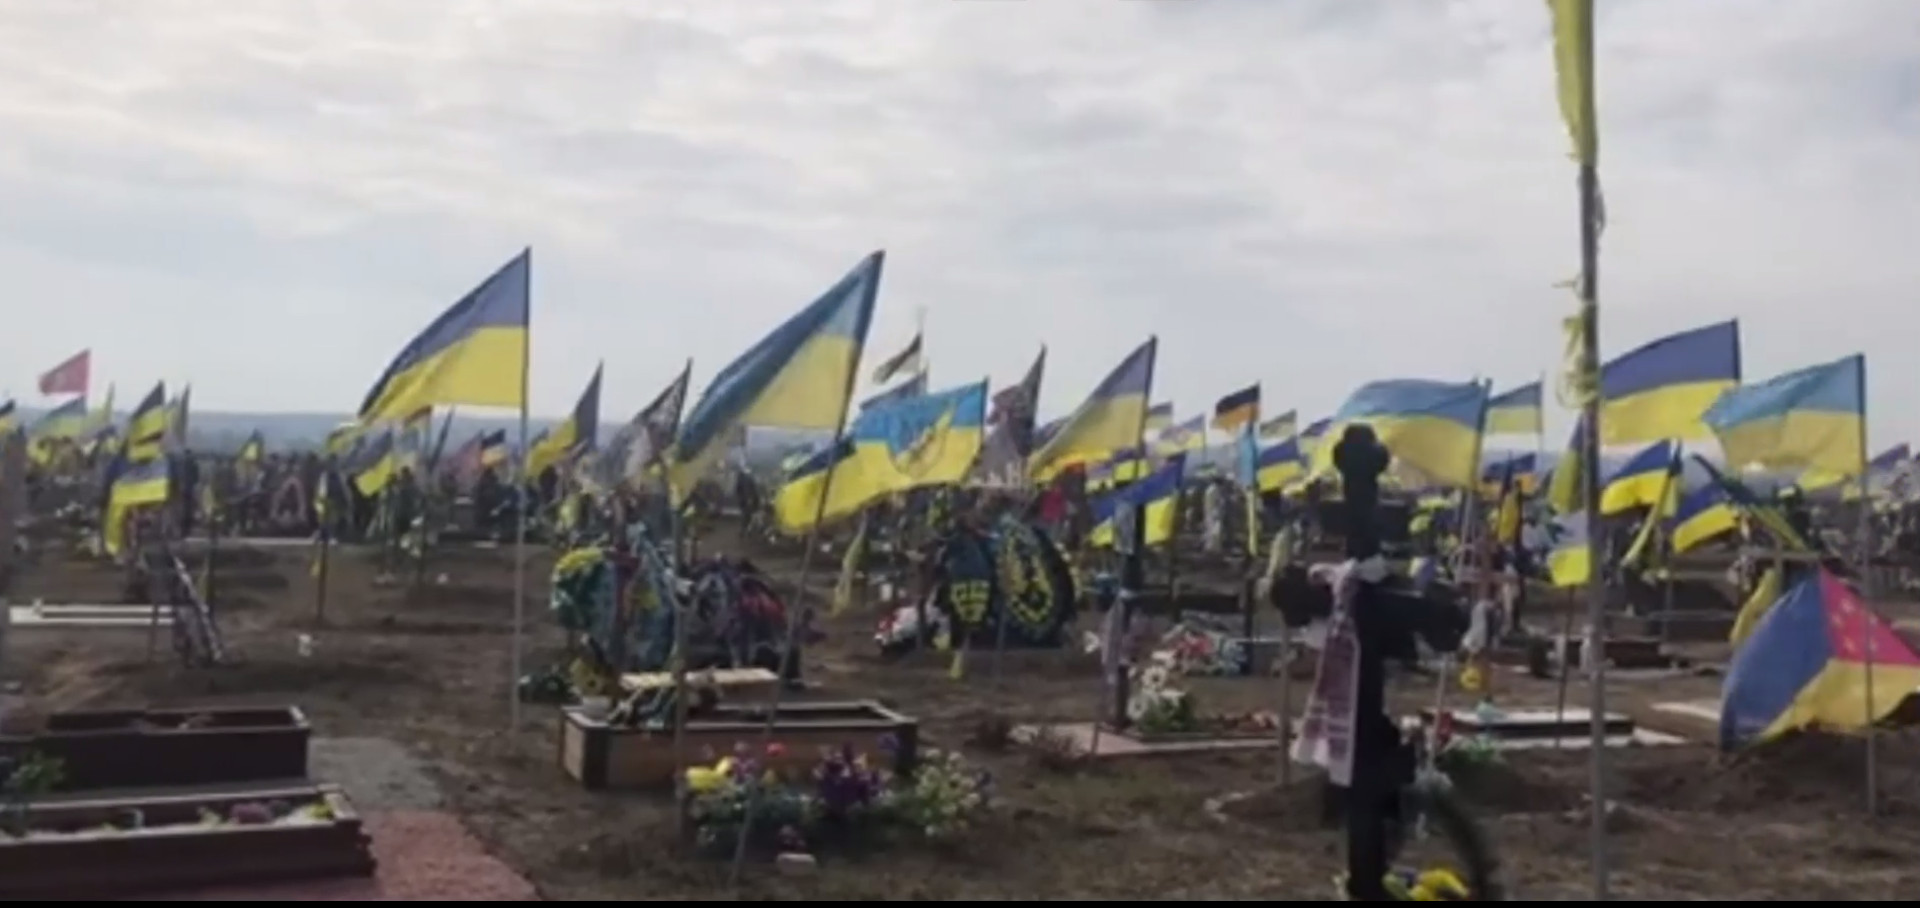 🔴👉Военные кладбища на бывшей Окраїне стремительно растут по площади и числу могил🔴